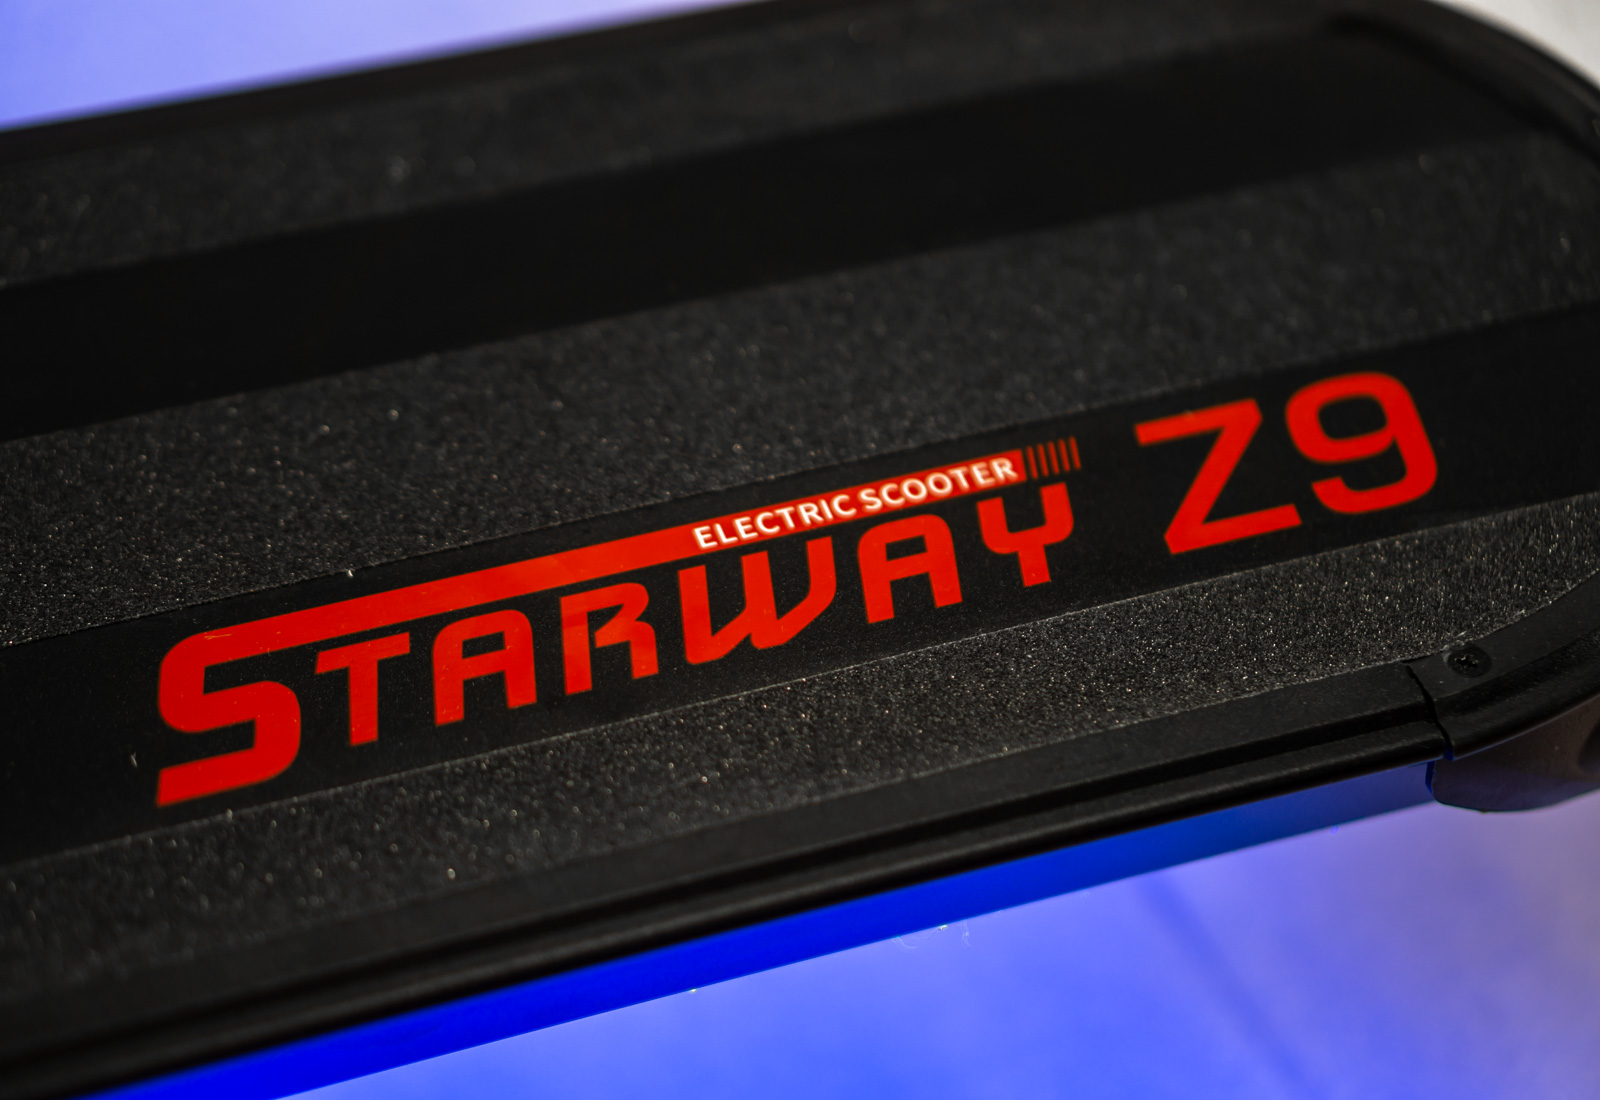 Электросамокат Starway Z9 LG 52V13Ah